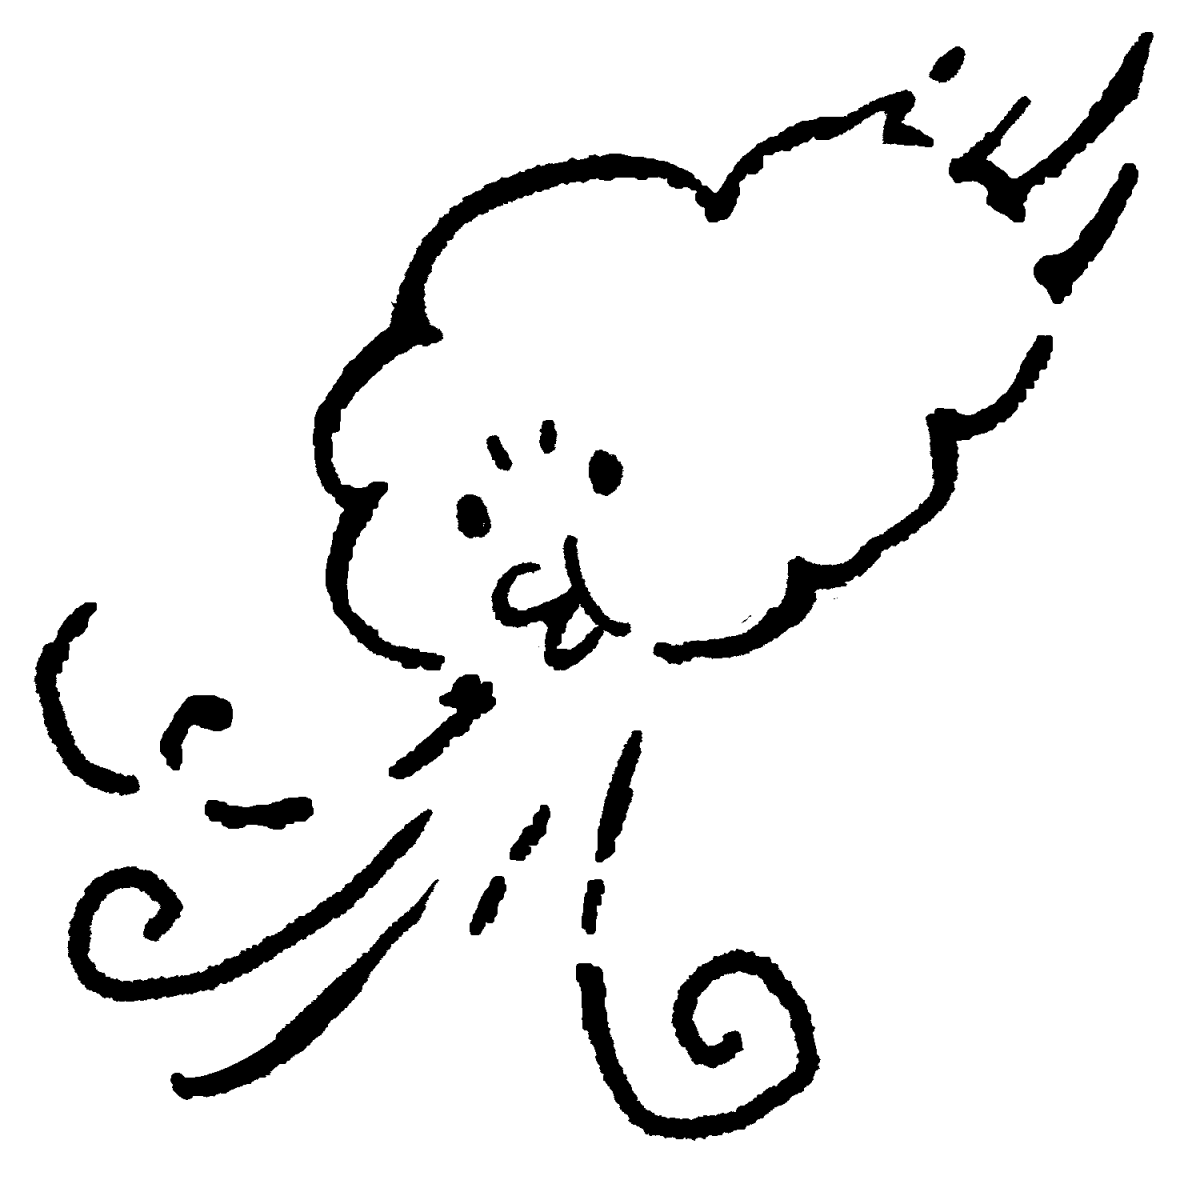 風を吹く北風のイラスト / Clouds blowing in the wind Illustration